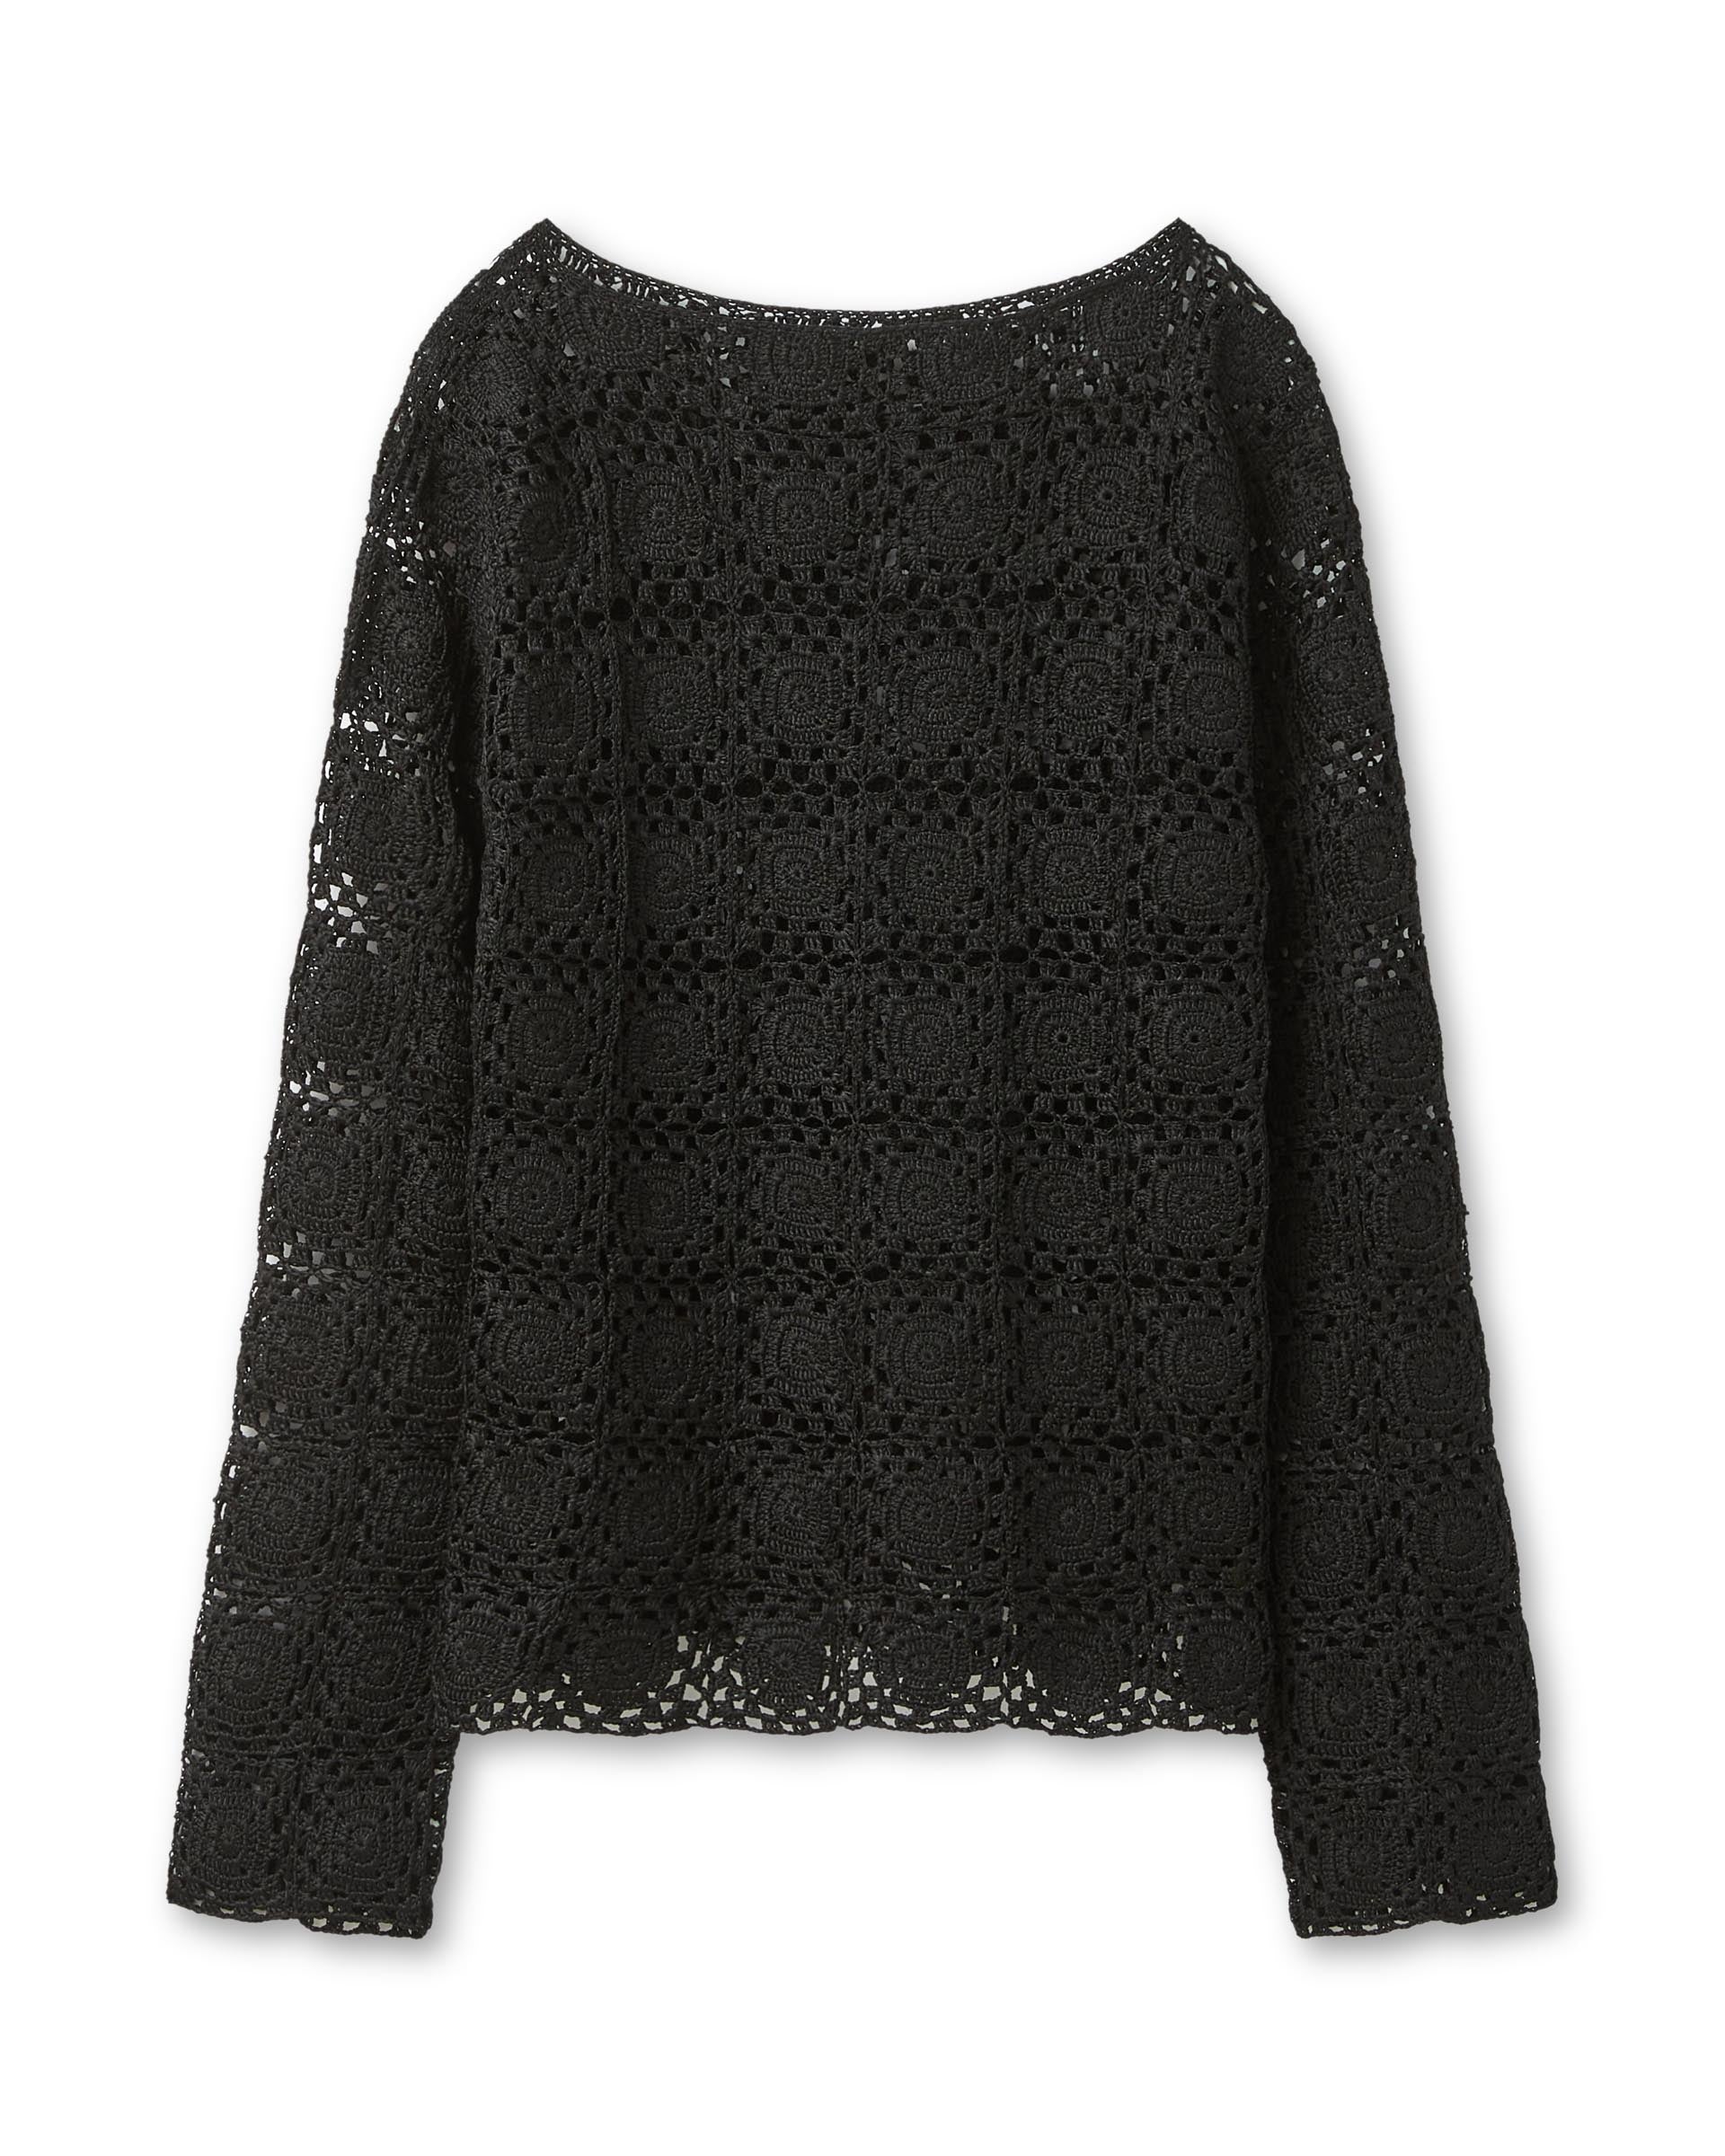 Elodie Crochet Top in Silk, Black